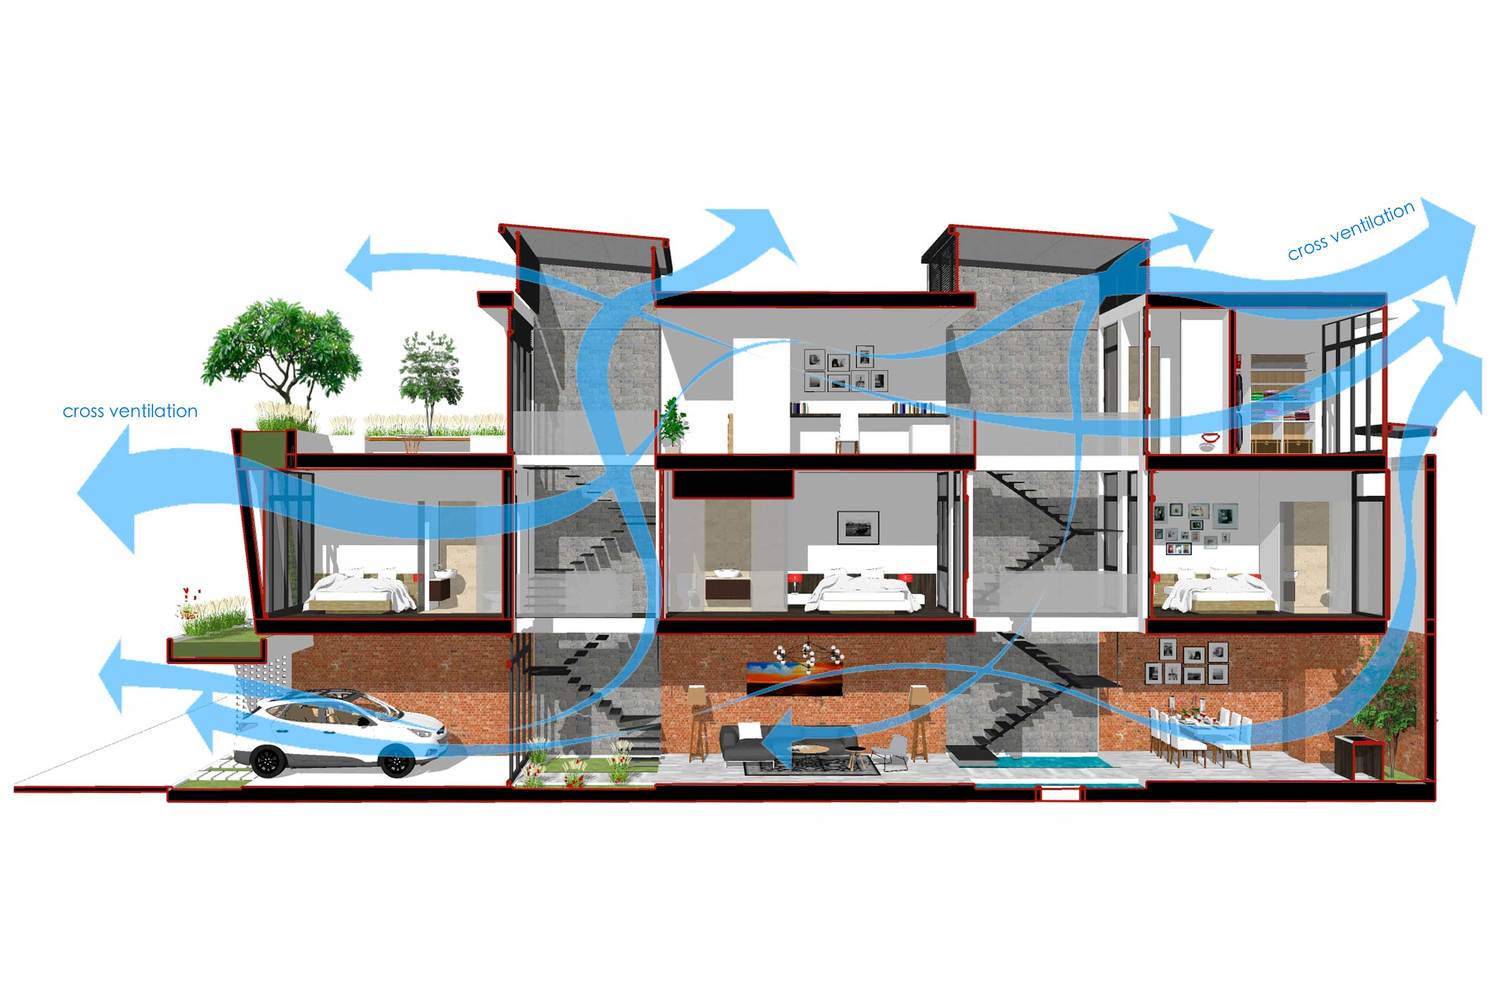 Thiết kế nhà cần thông gió để đảm bảo không khí luôn được thay mới